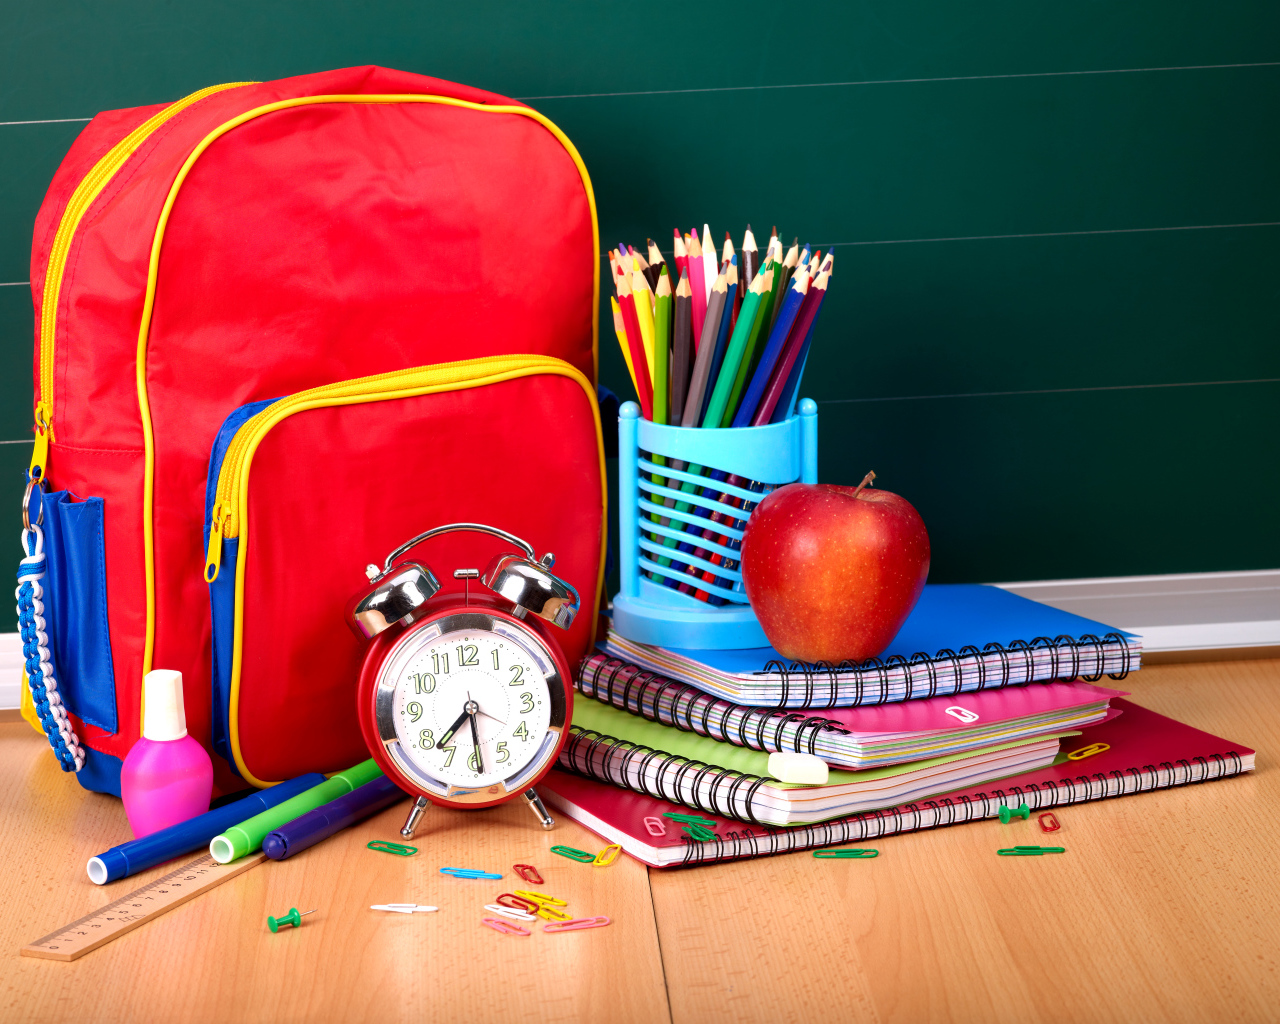 Рюкзак, тетради, карандаши, будильник и яблоко на День знаний 1 сентября